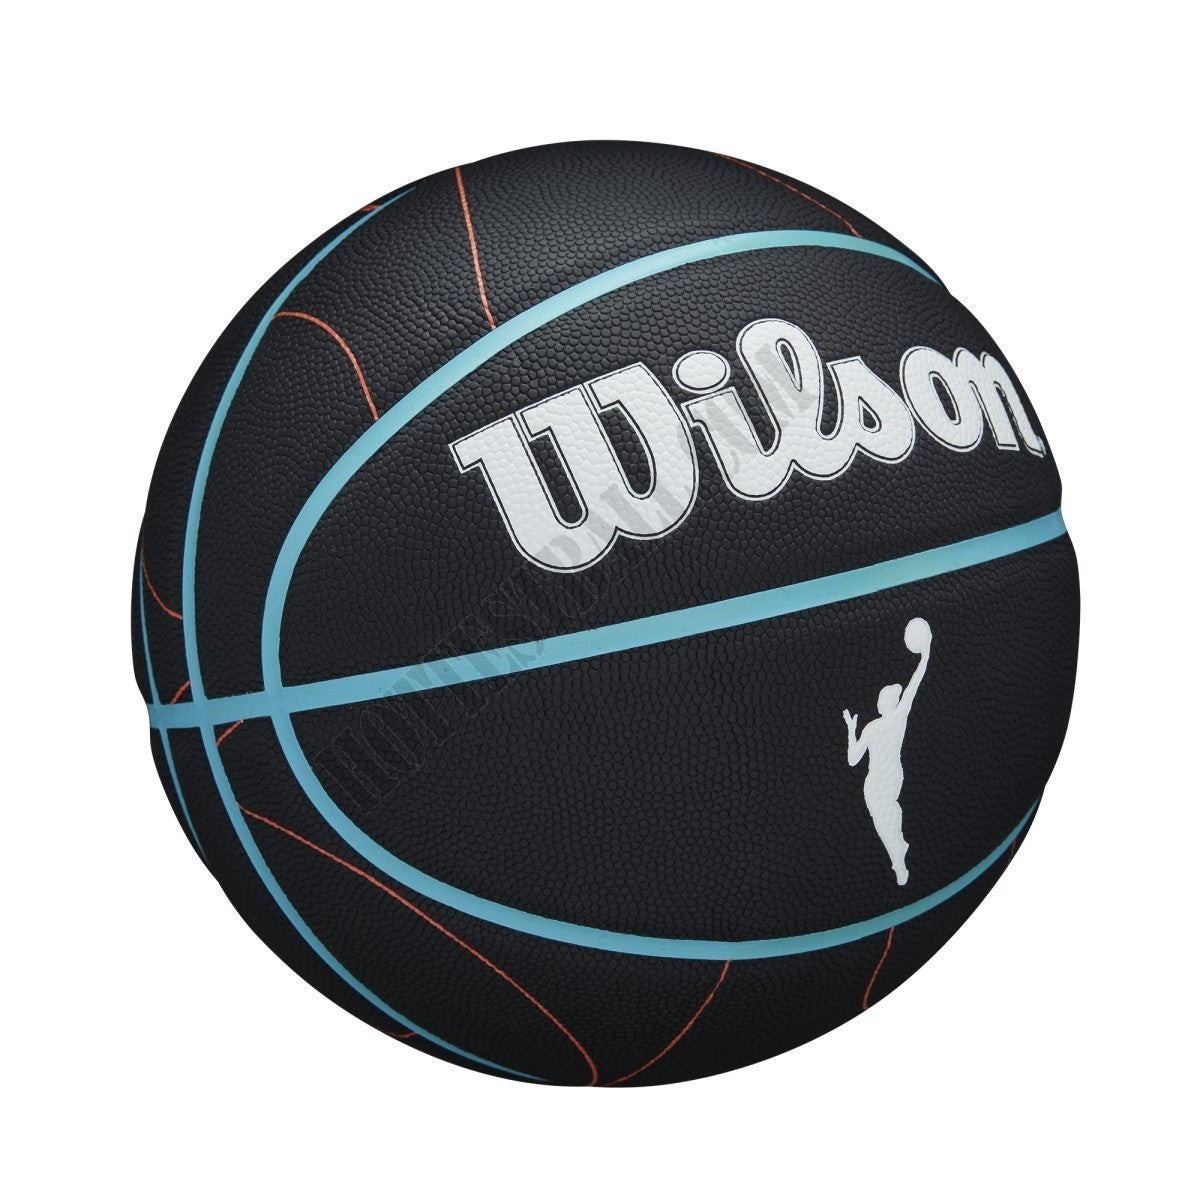 WNBA Heir Court Indoor/Outdoor Basketball - Wilson Discount Store - -2